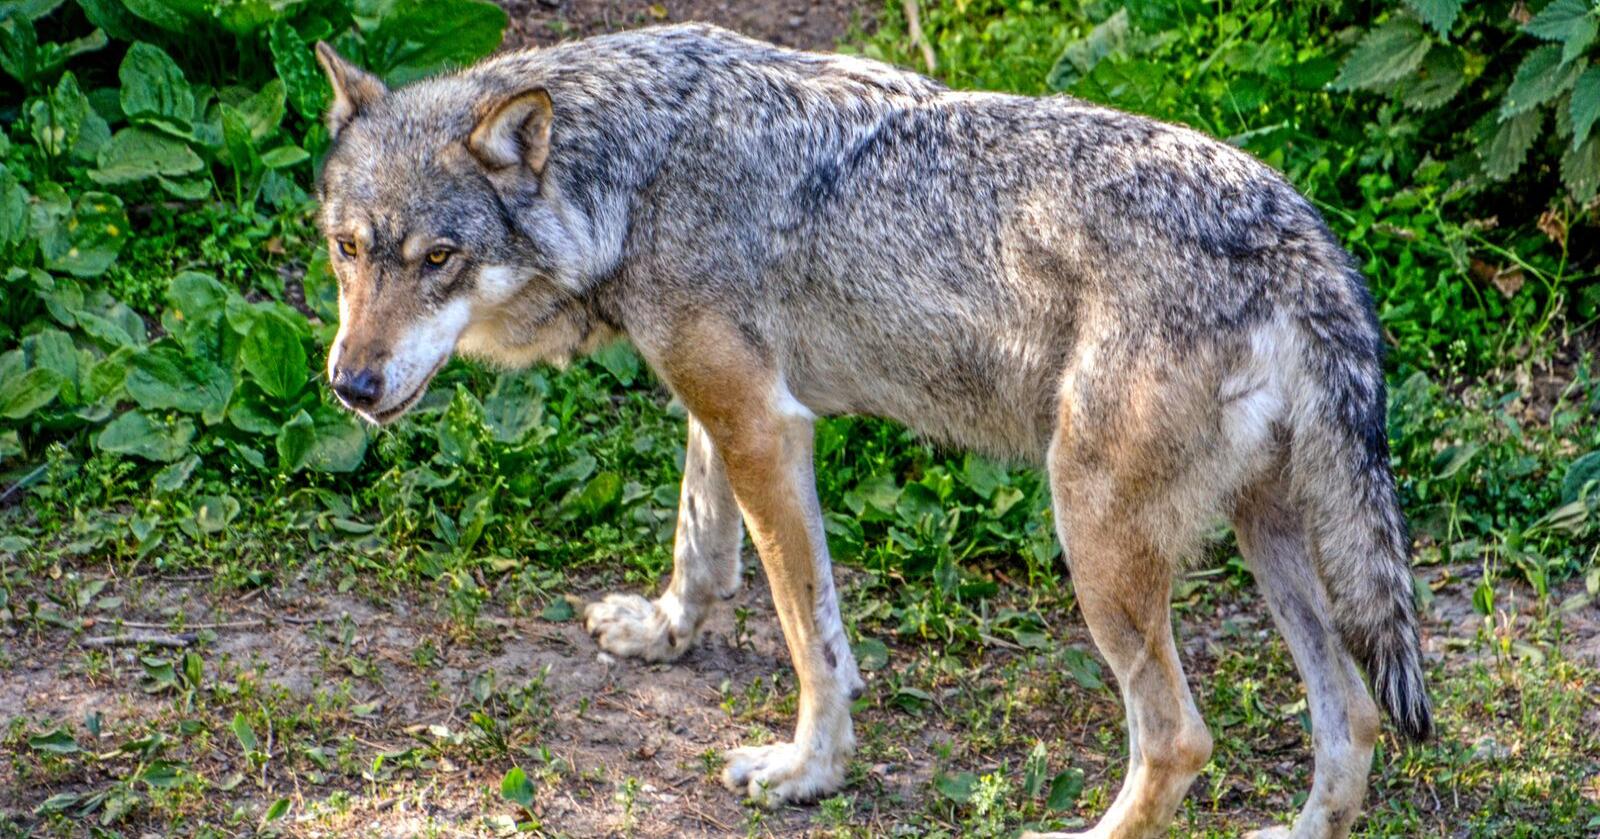 En ulv er observert på frifot flere steder i Viken de siste dagene. Nå utvides fellingstillatelsen til også å gjelde Kongsberg. Foto: Mostphotos